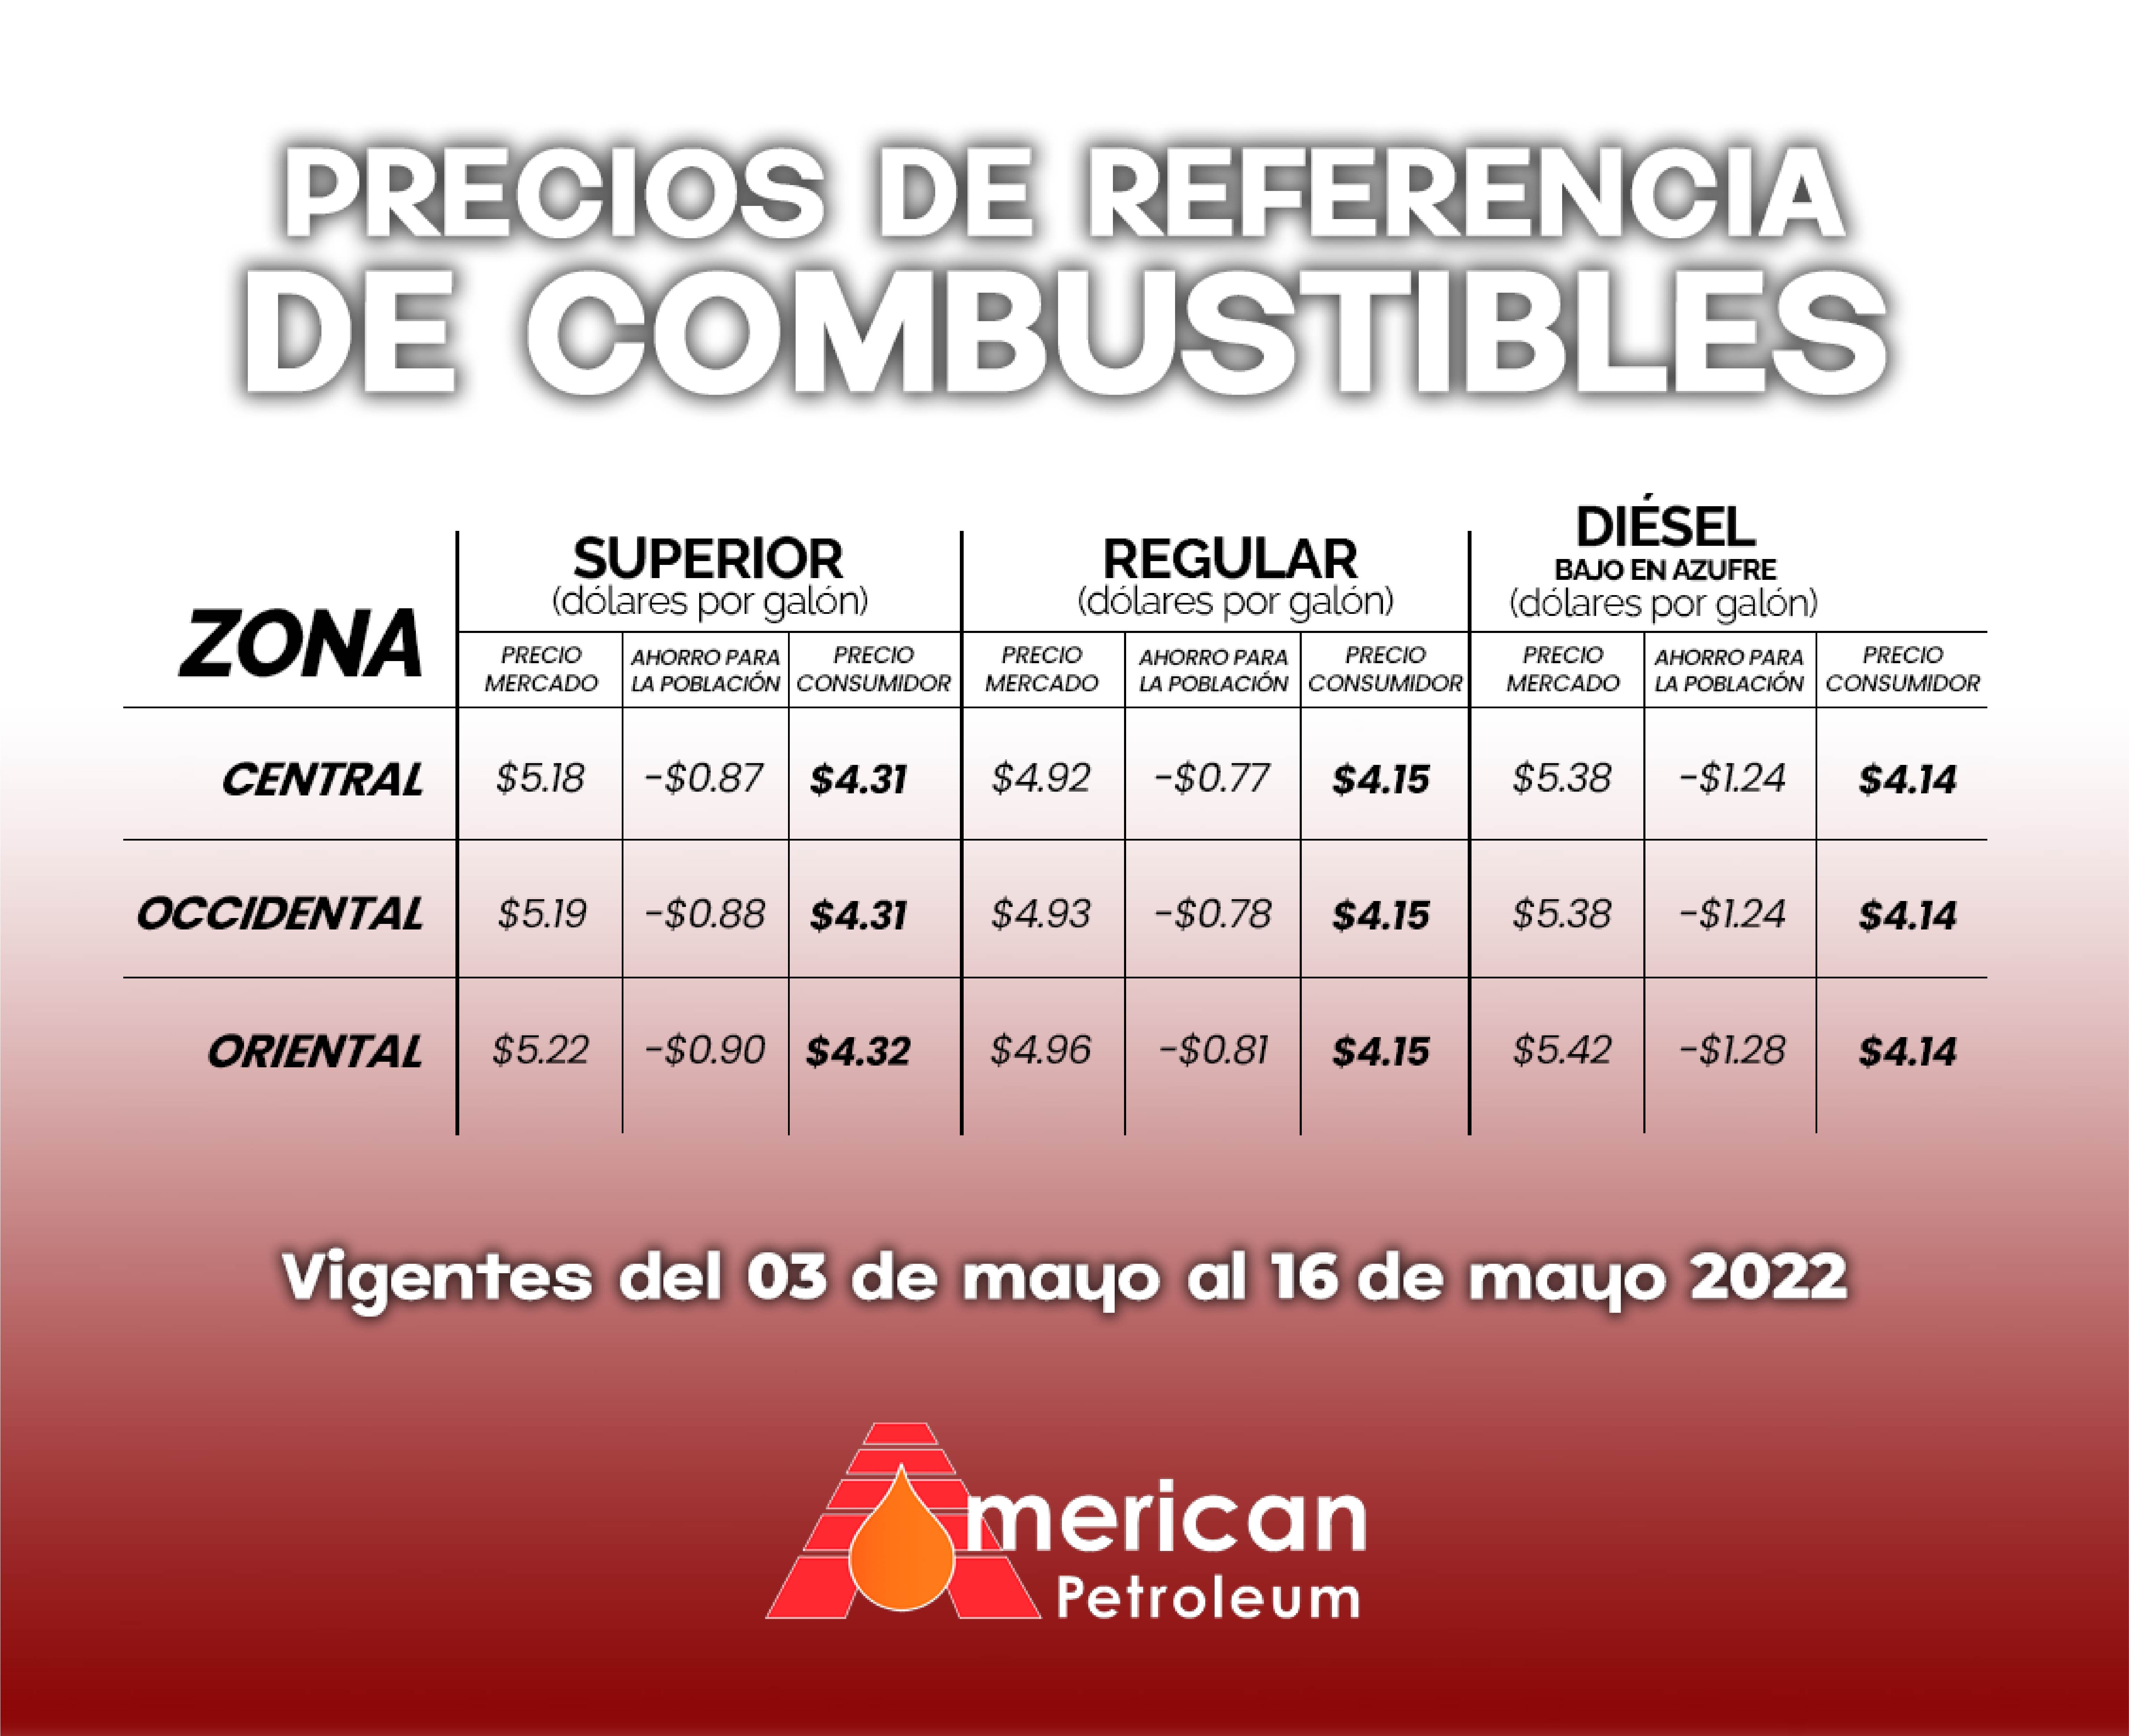 Precios de referencia del combustible en El Salvador, vigentes del 03 al 16 de mayo de 2022.